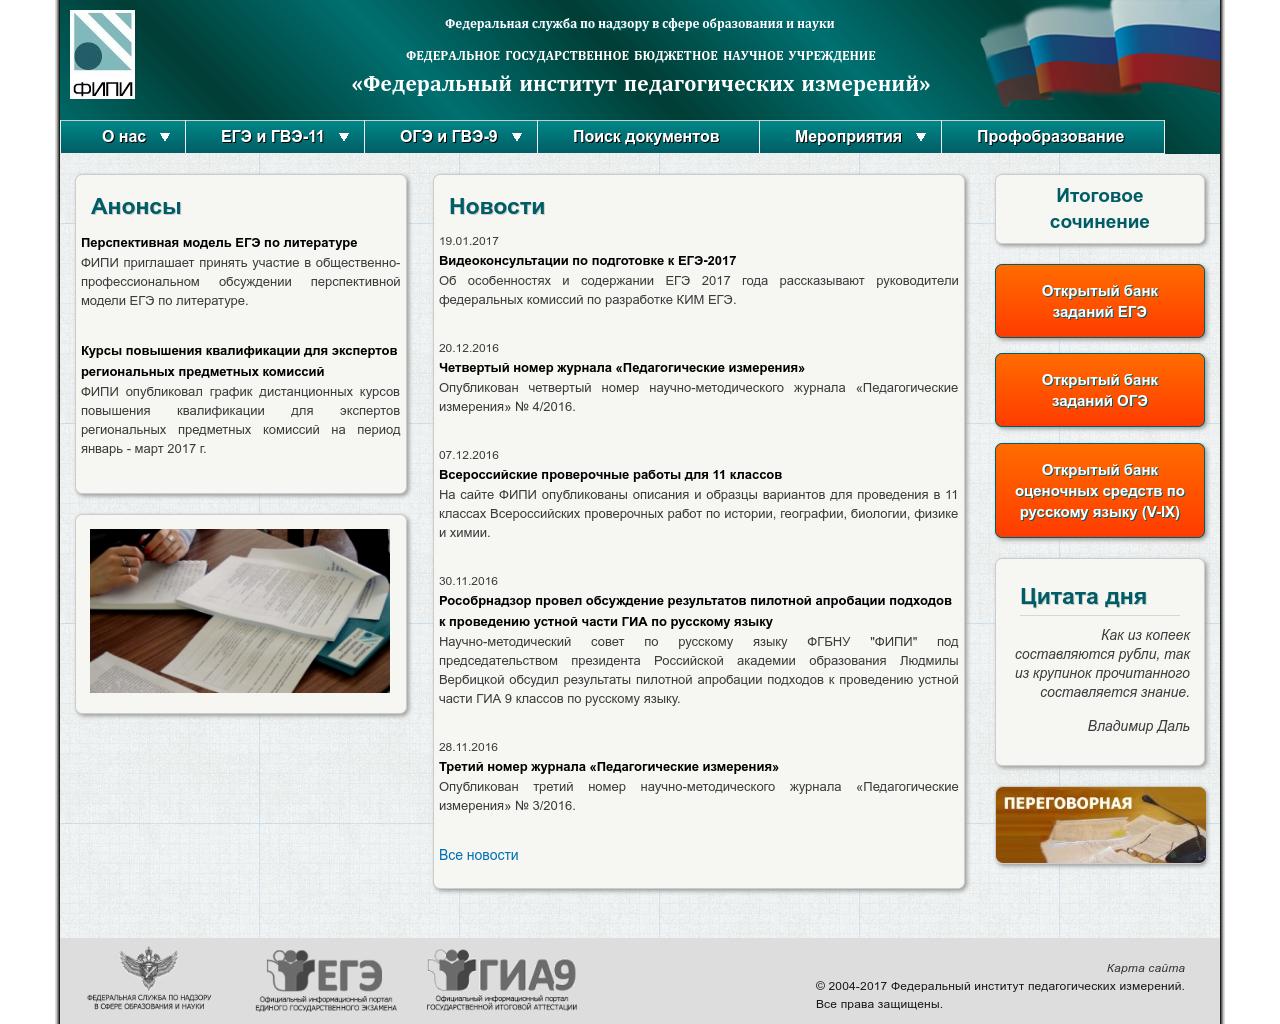 Изображение сайта fipi.ru в разрешении 1280x1024